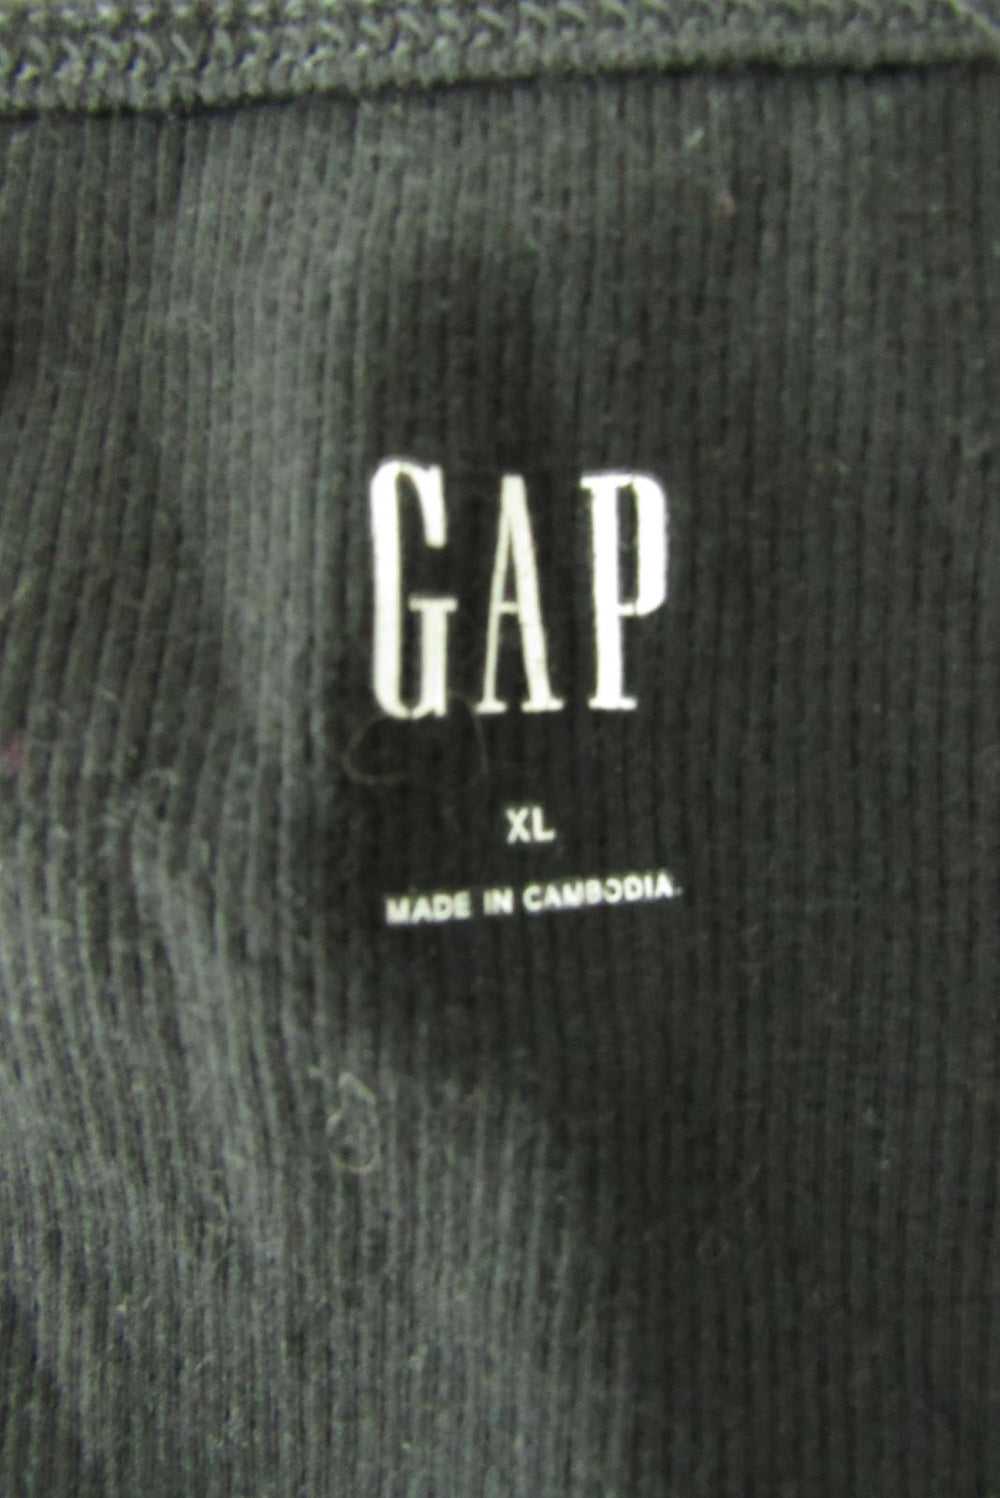 Gap Tank Top Shirt - image 3